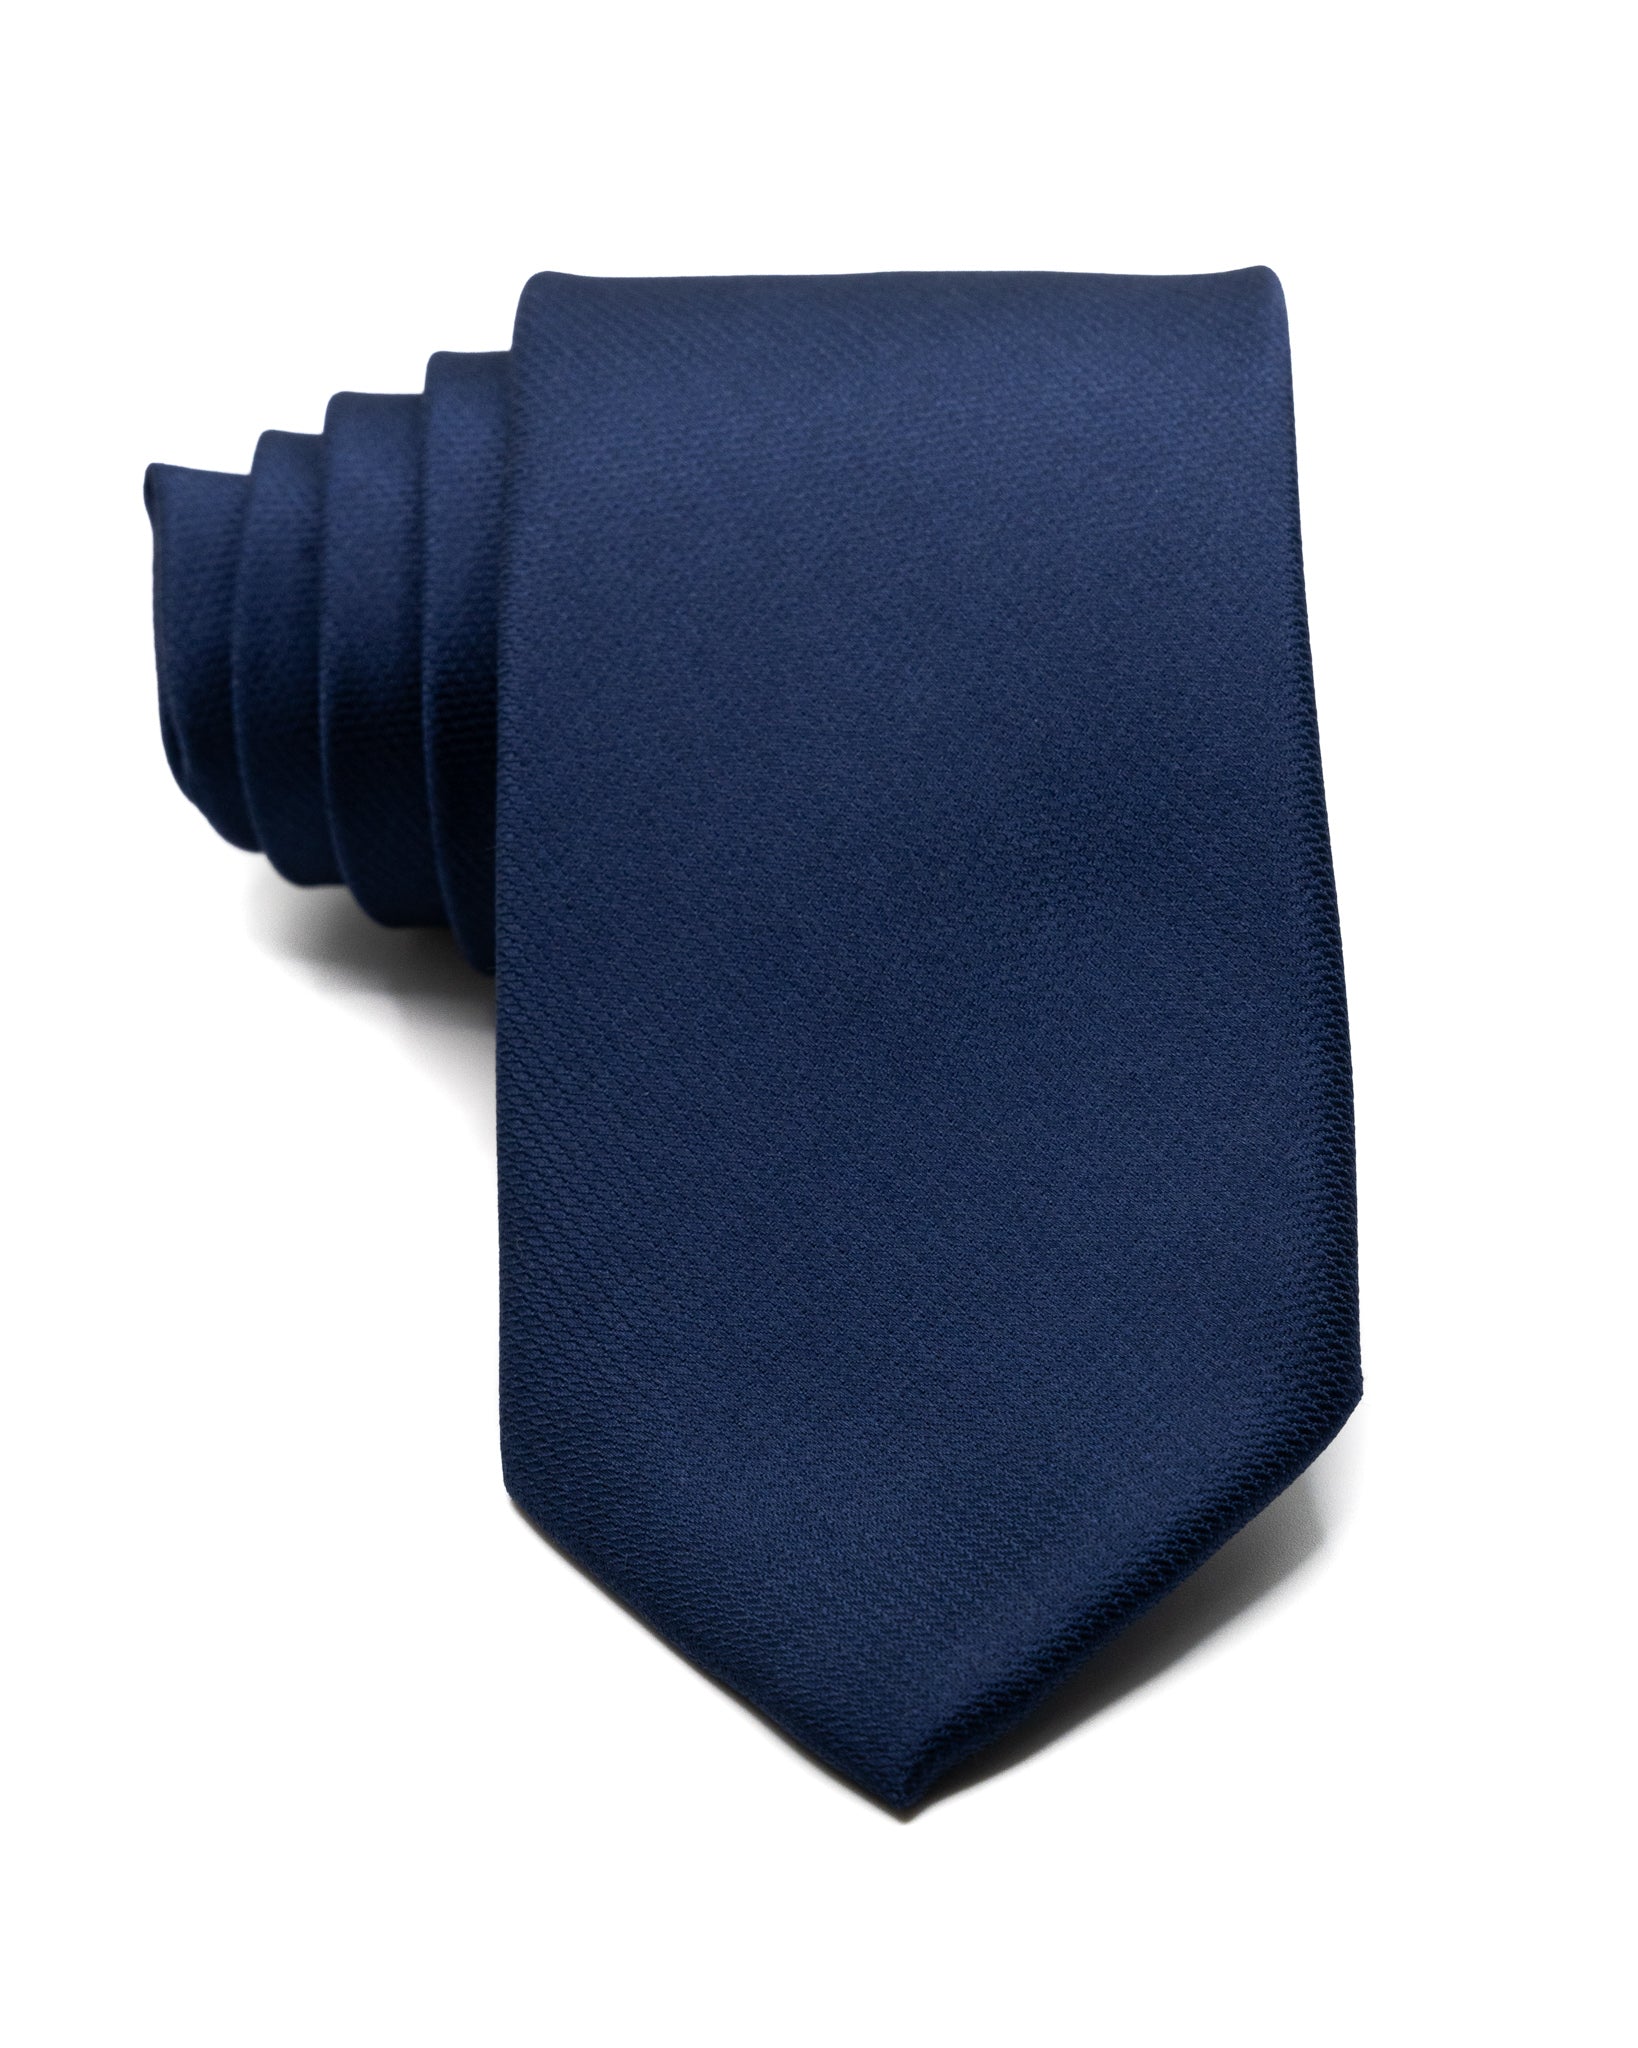 Cravatta - in seta armaturata blu